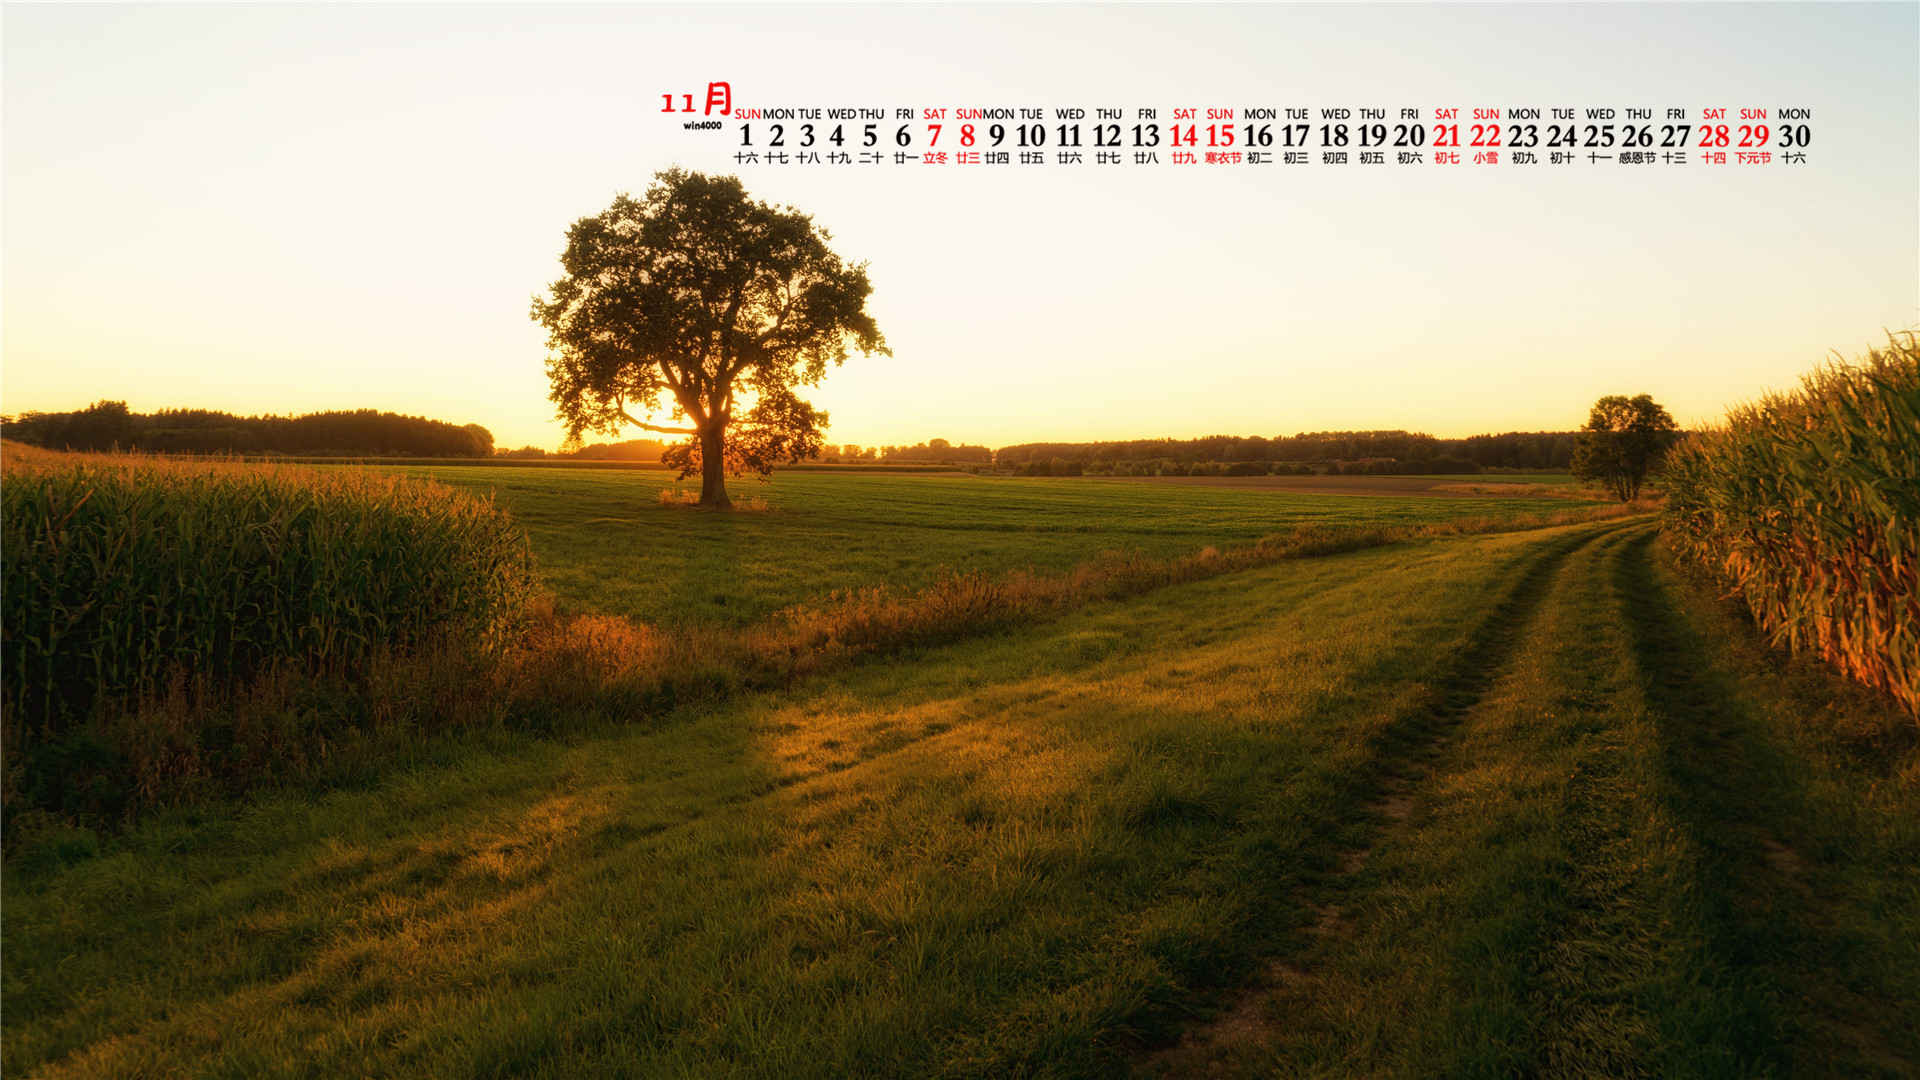 一望无际的田野、相间小路、树木等清新绿色养眼11月日历壁纸图片